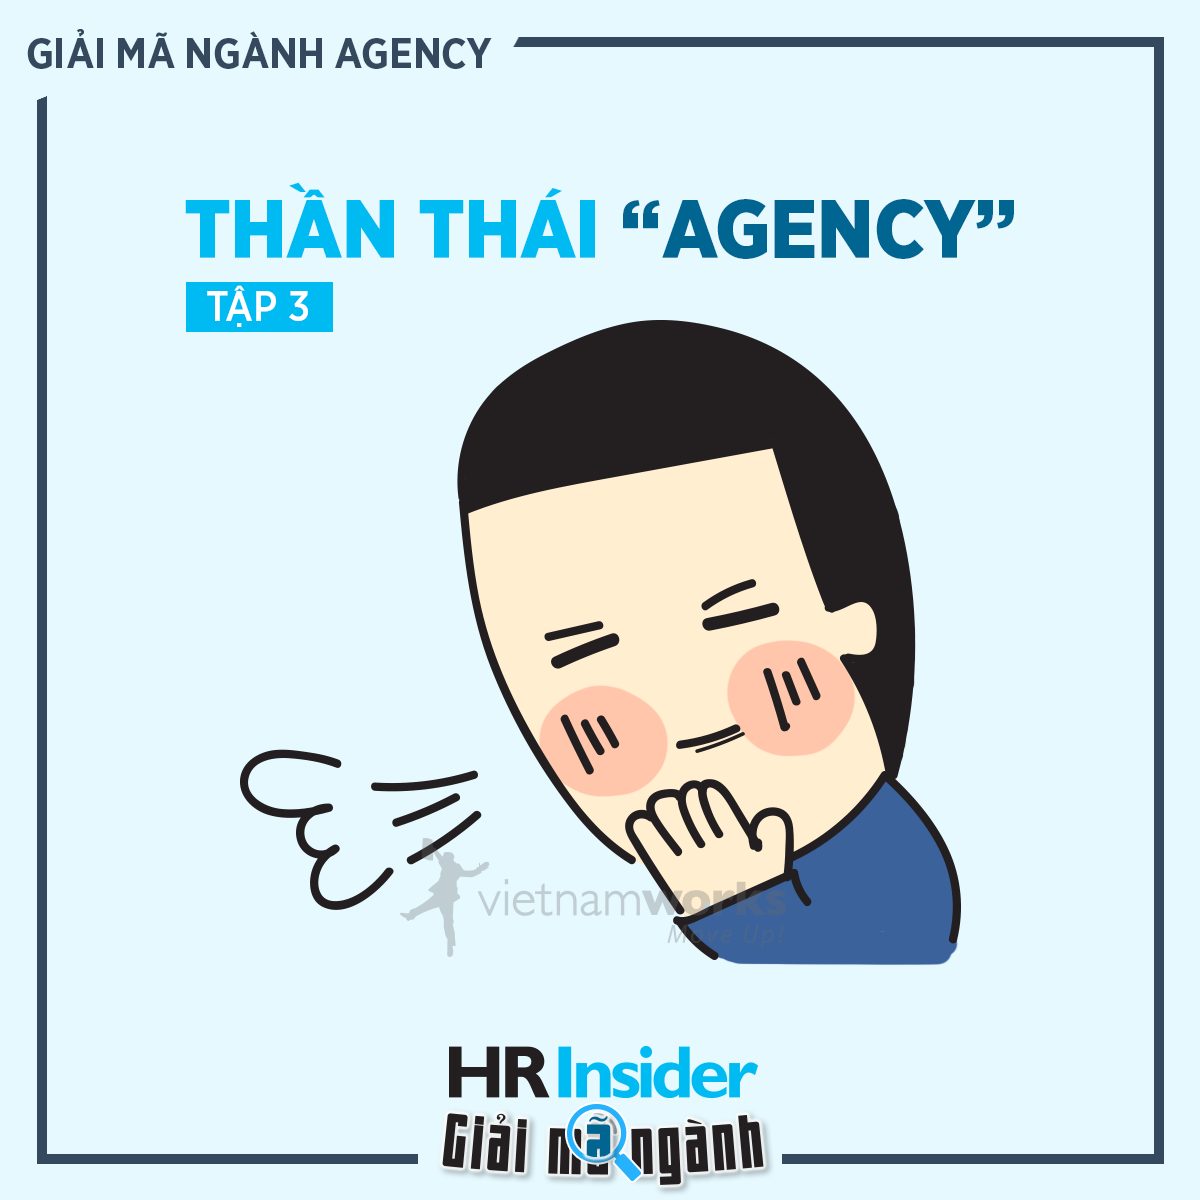 giai ma nganh agency tap 3 dieu gi lam nen than thai cua mot agency 3